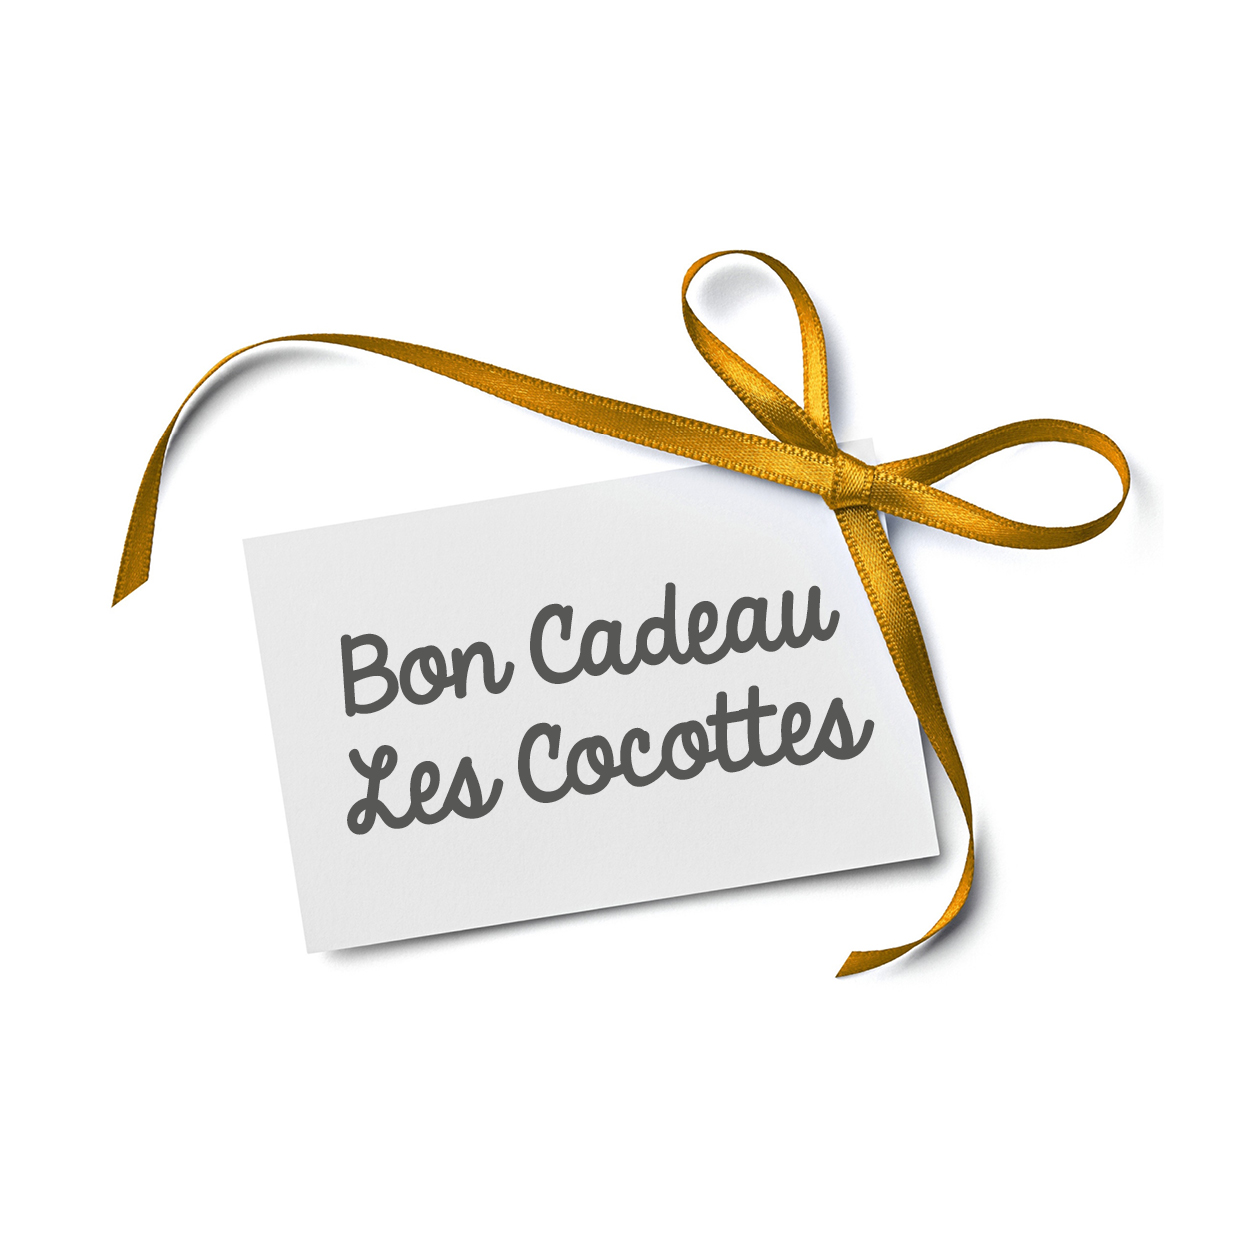 Bons Cadeaux - Les Cocottes Porte de Geneve